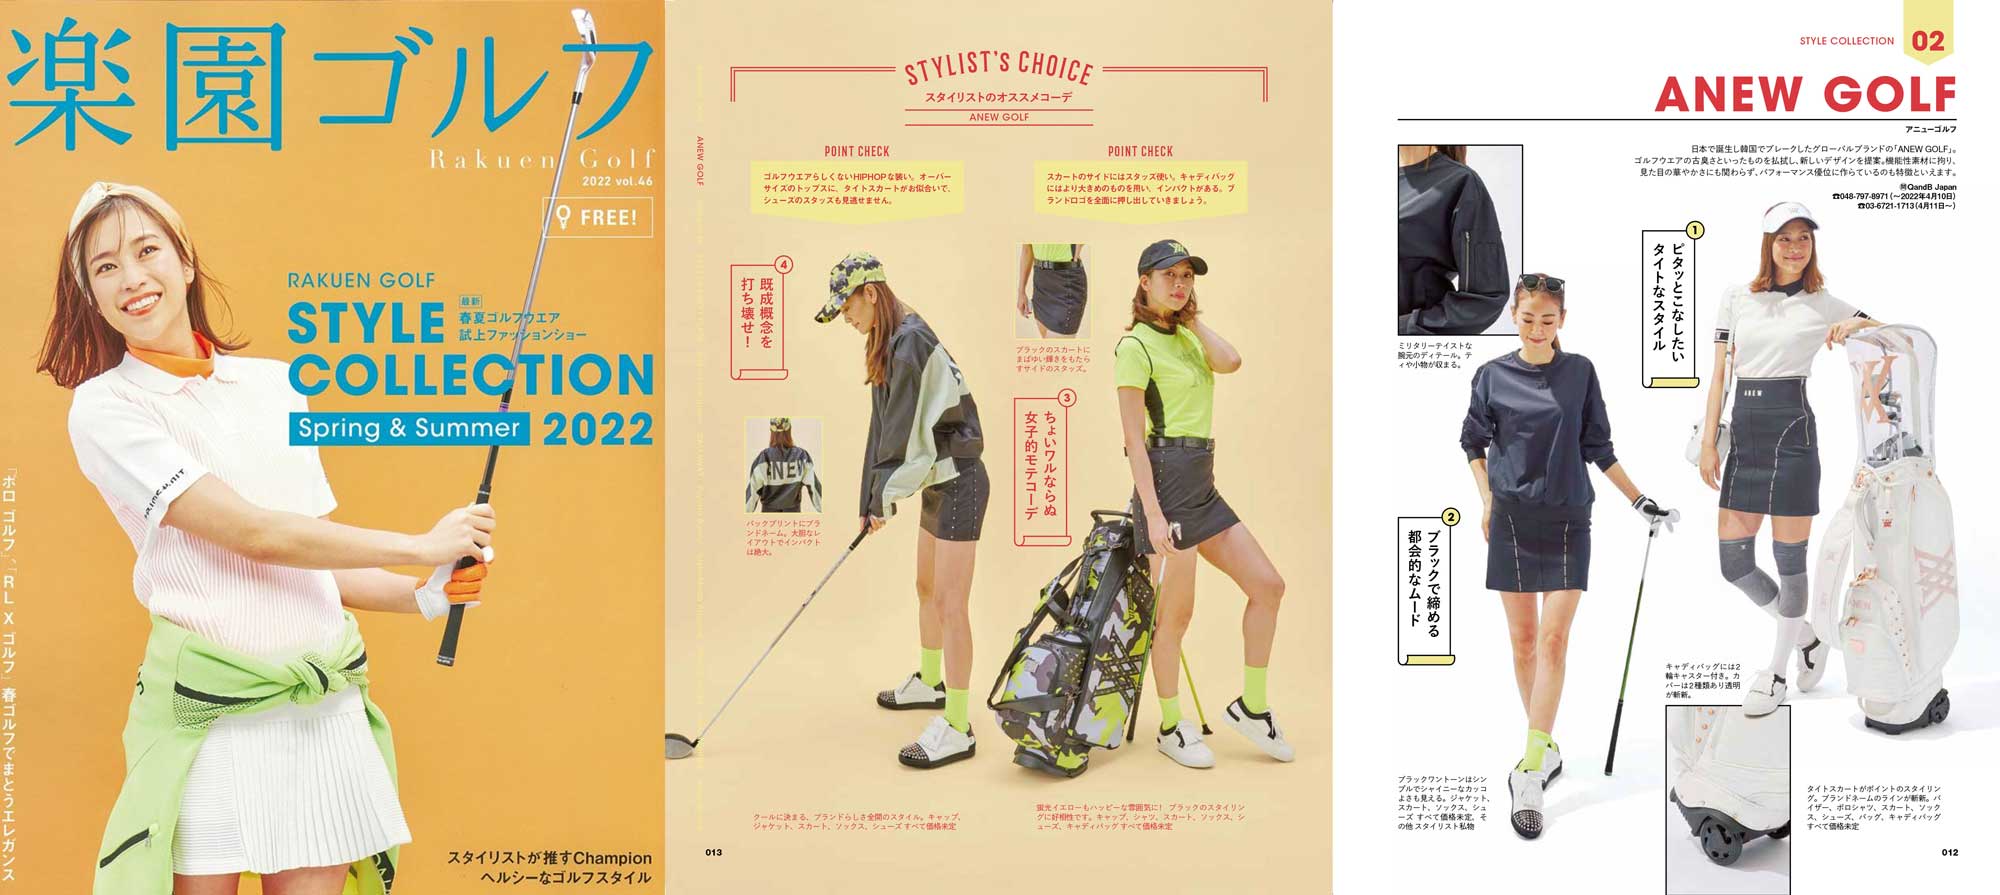 『楽園ゴルフ 2022 vol.46』掲載